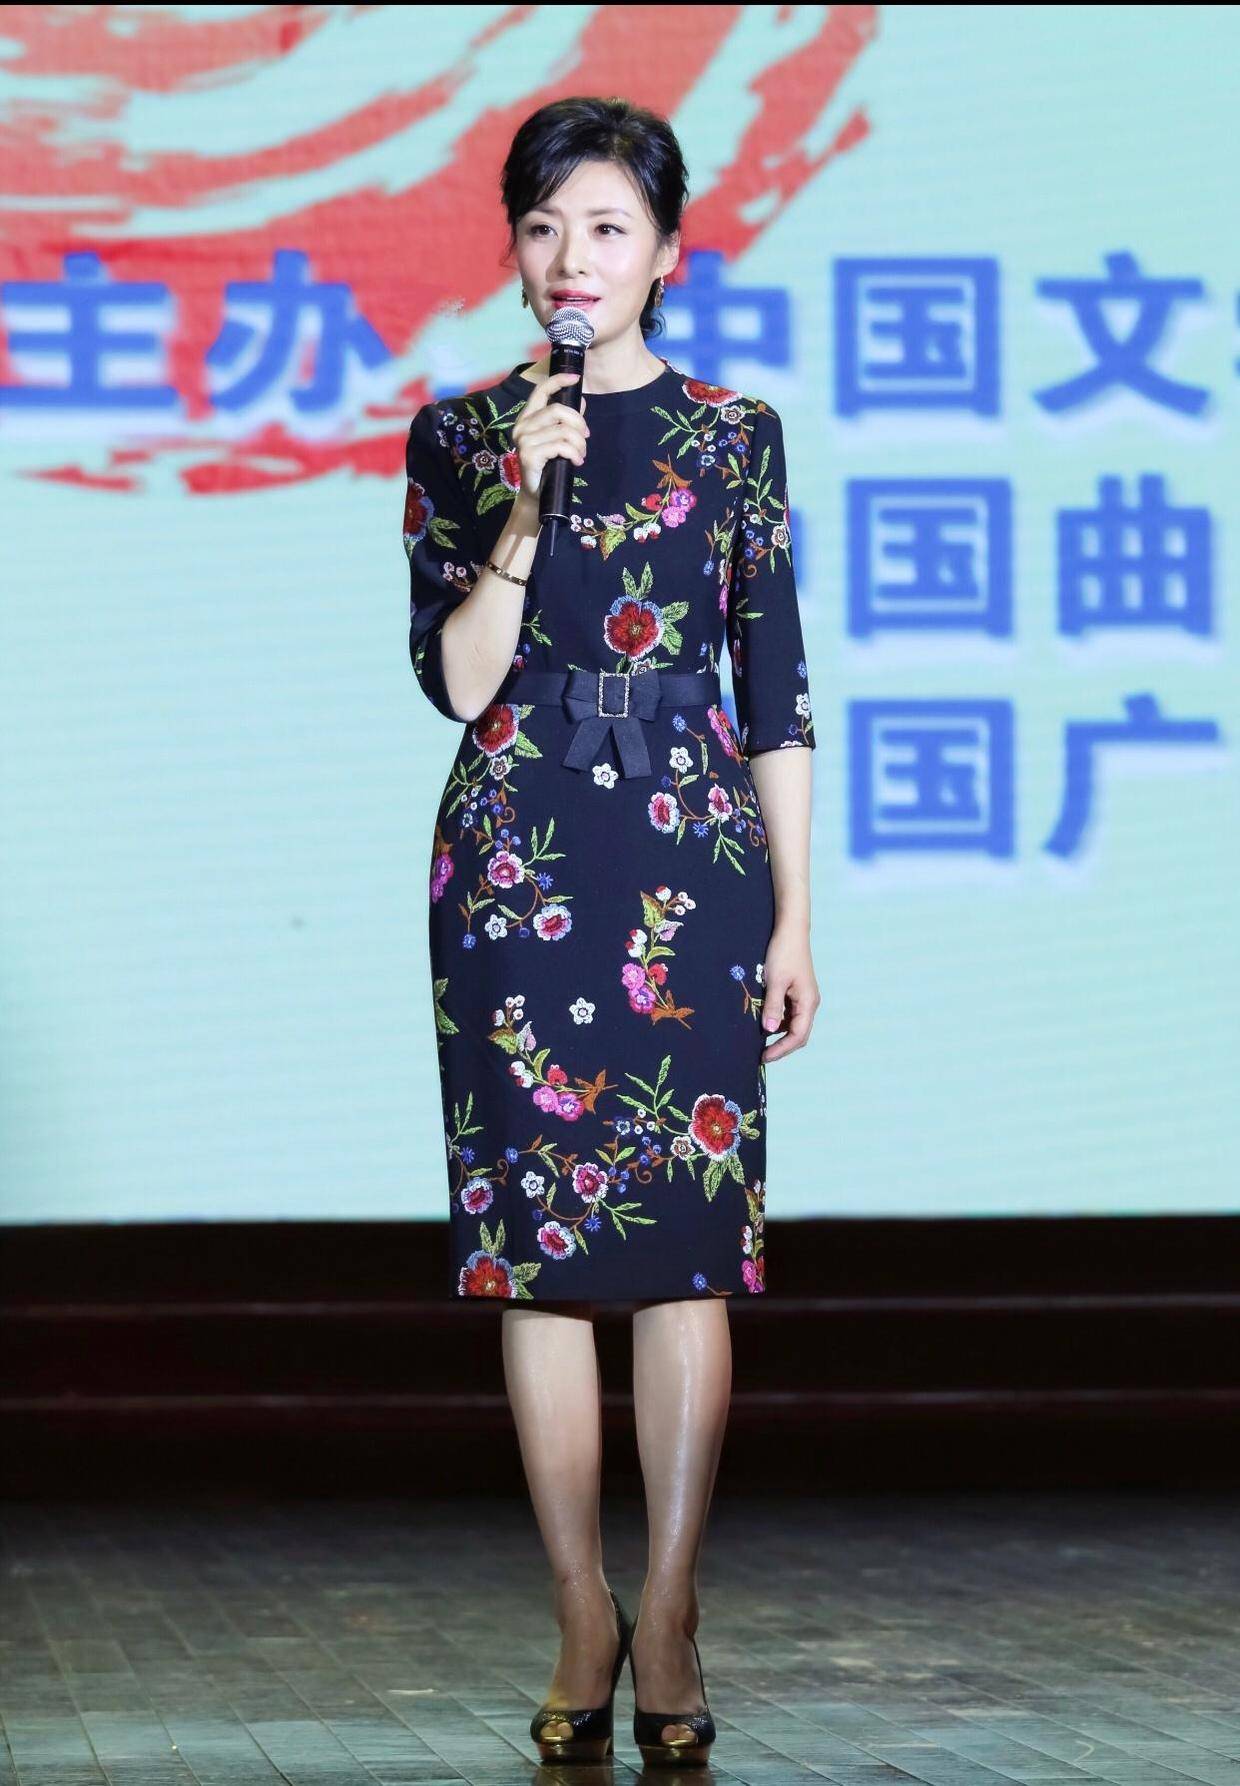 原创央视主持人周涛,穿蕾丝裙配盘发优雅又大气,52岁状态像32岁